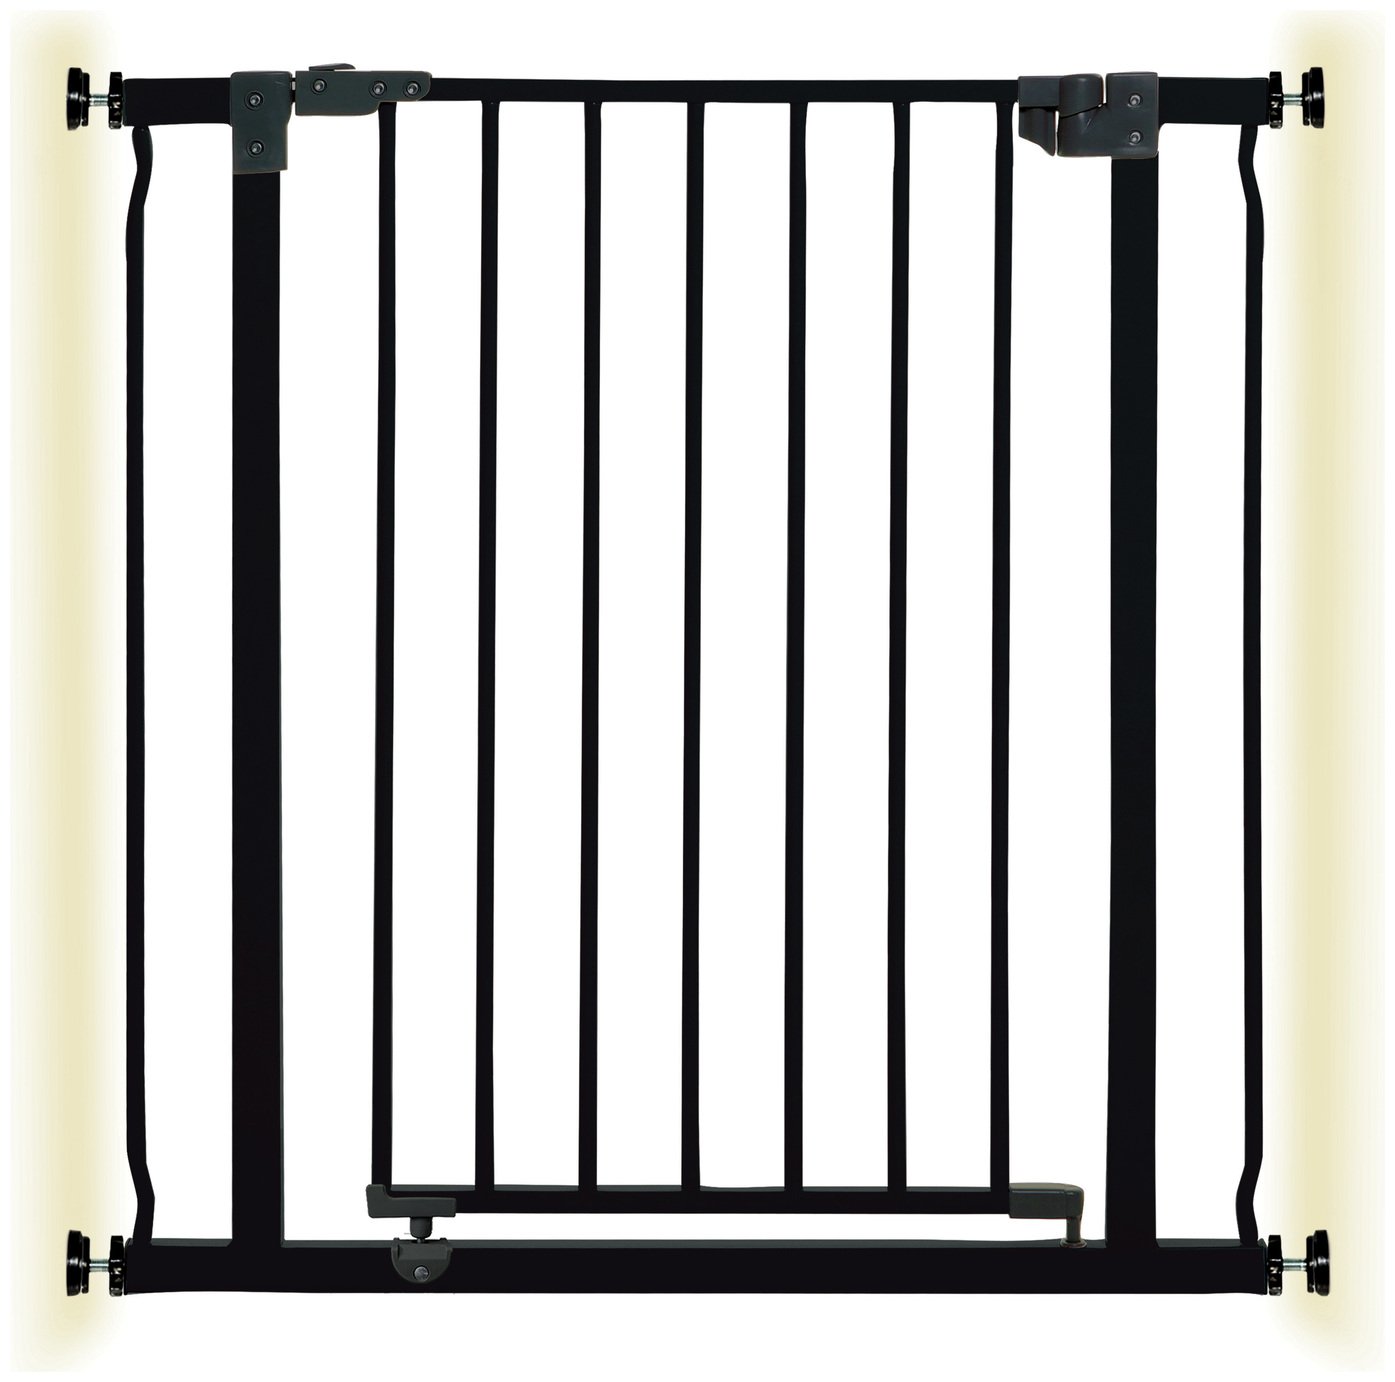 dreambaby liberty safety gate